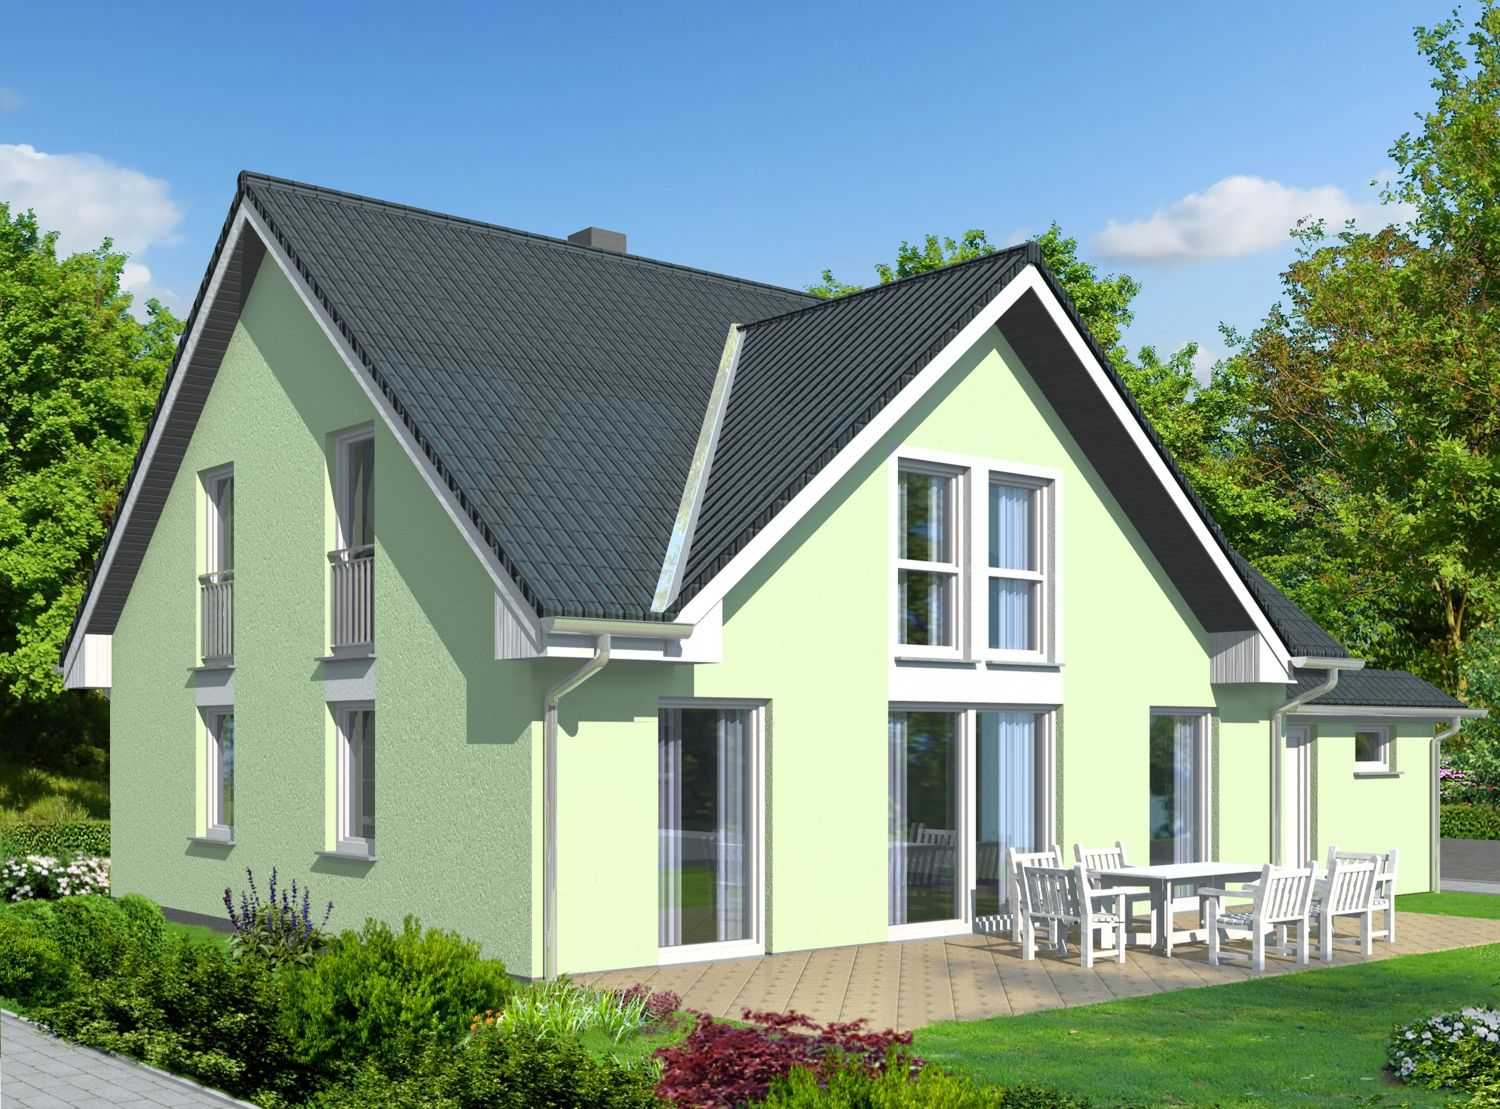 Architekturvisualisierung Terrassenfassaden eines Muster-Einfamilienhauses für die Firma BRALE (Jahr 2011)